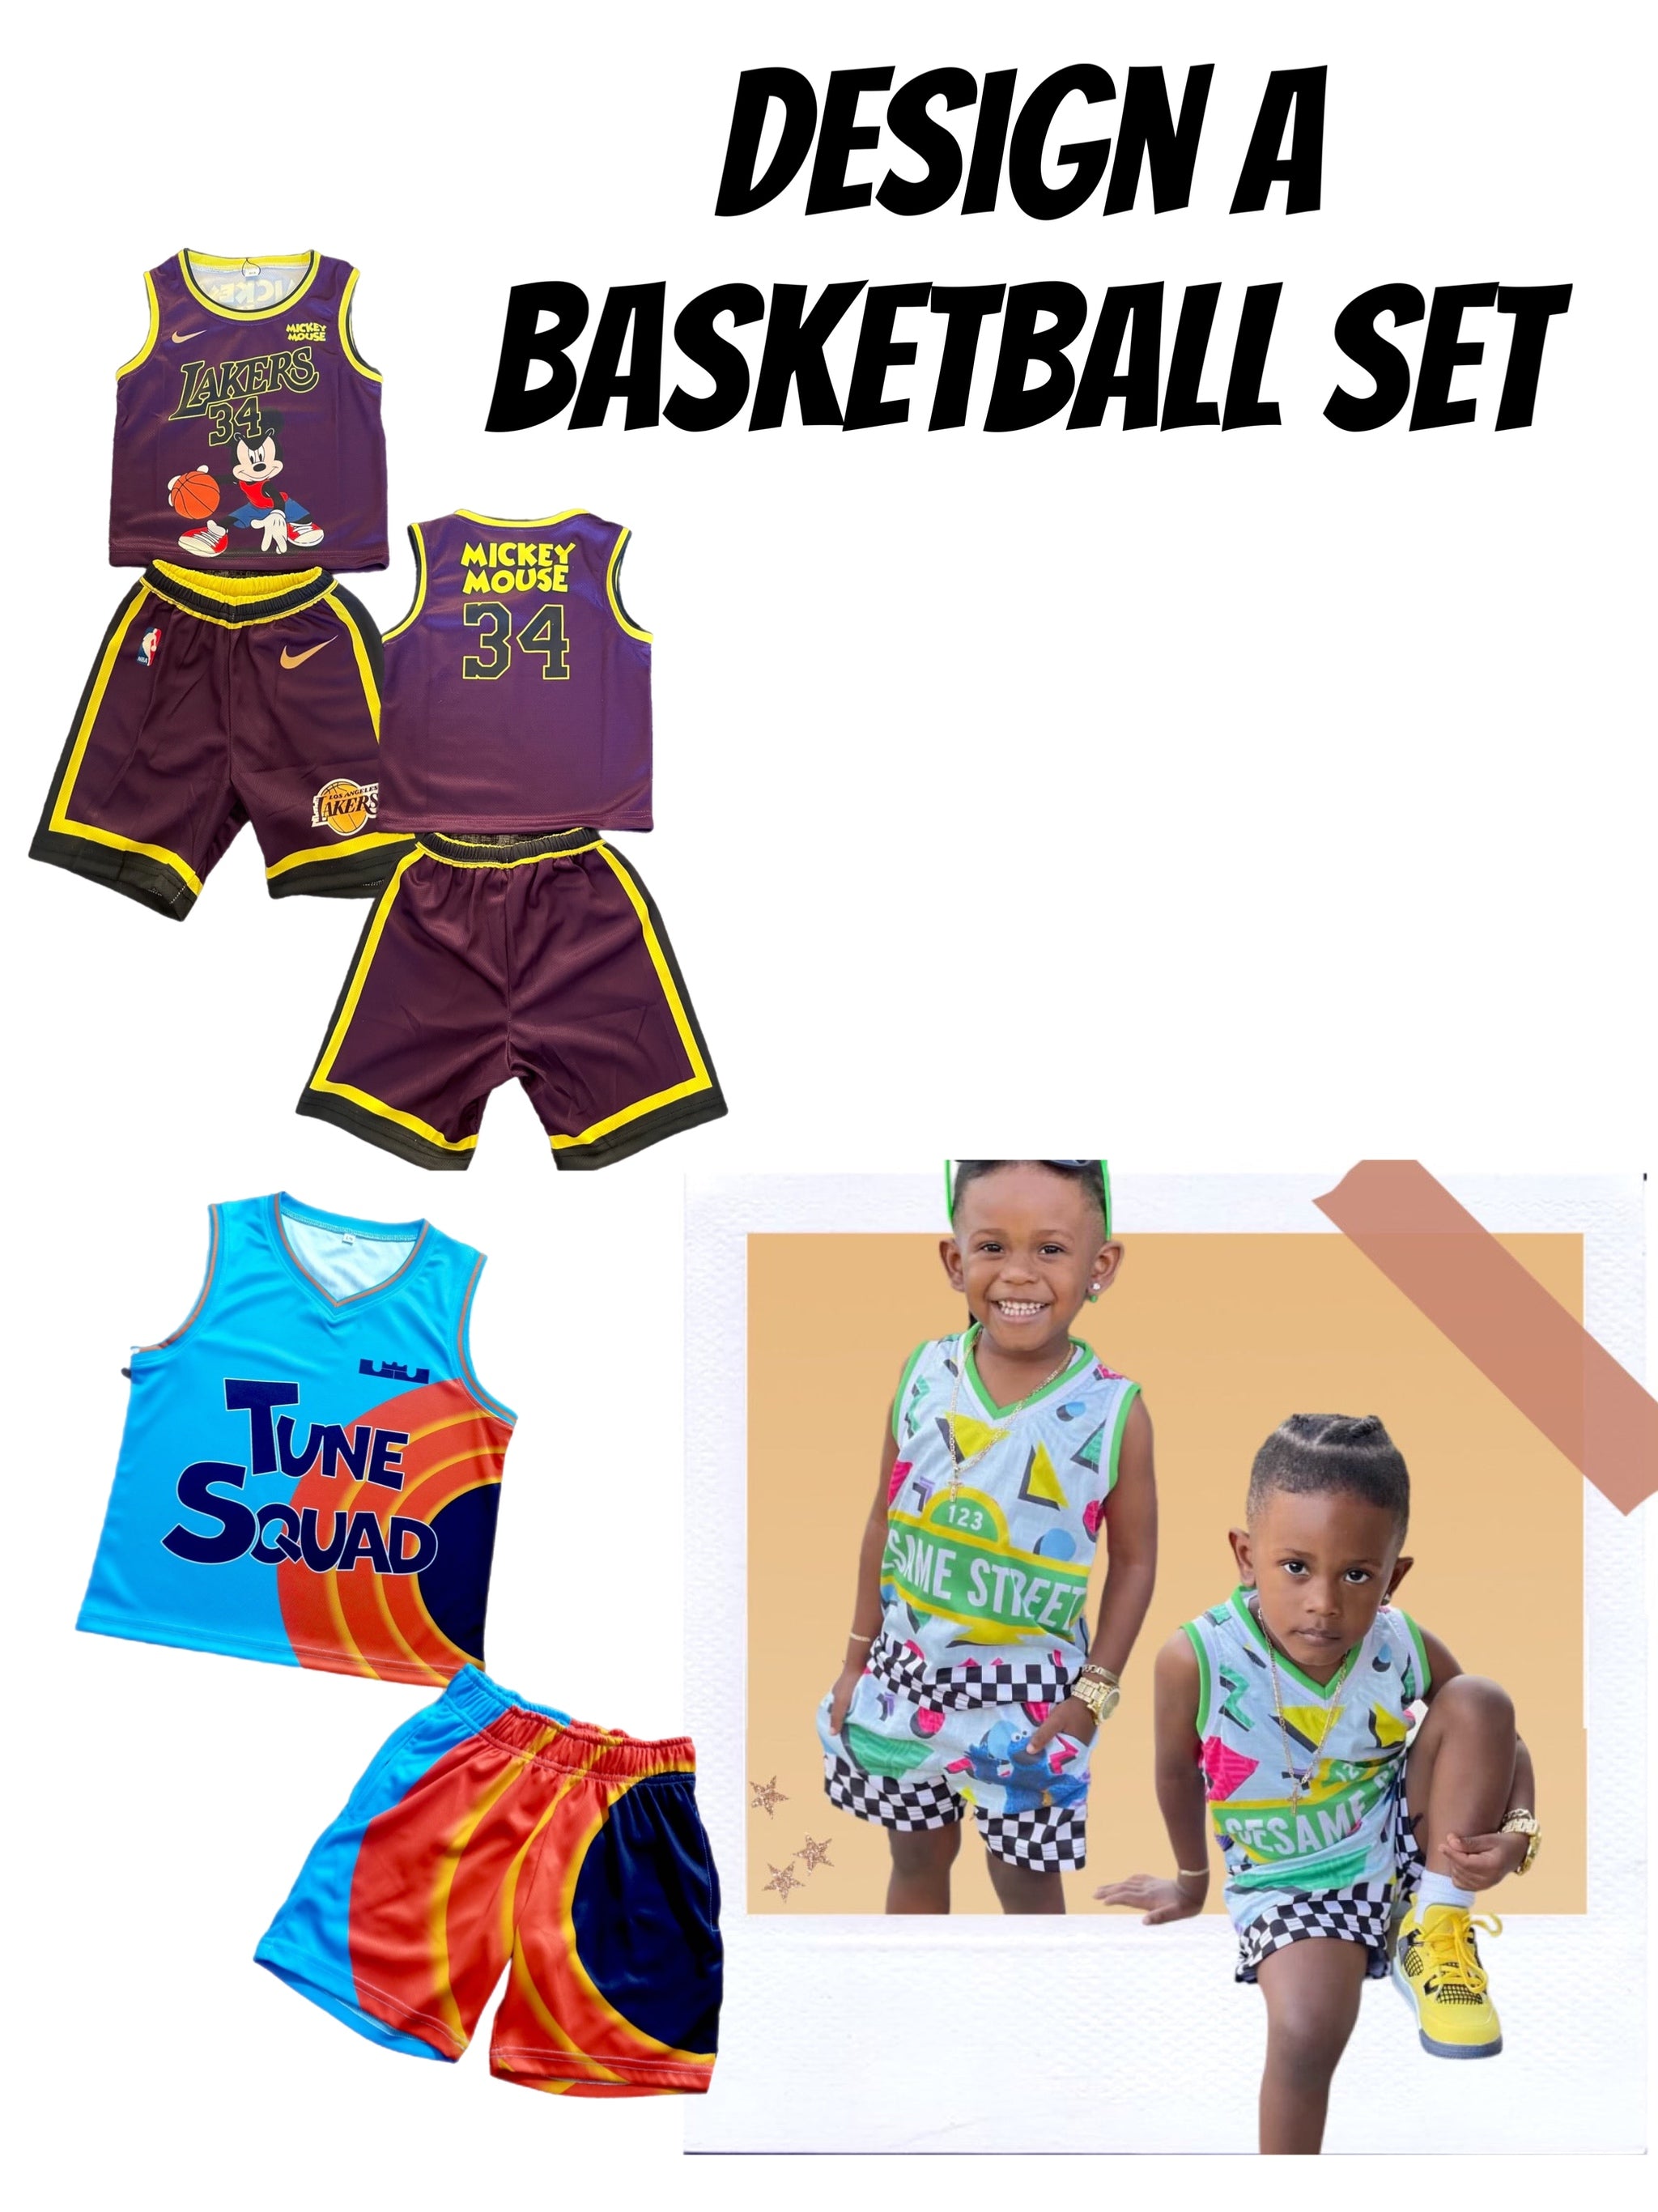 Design a Basketball jersey set